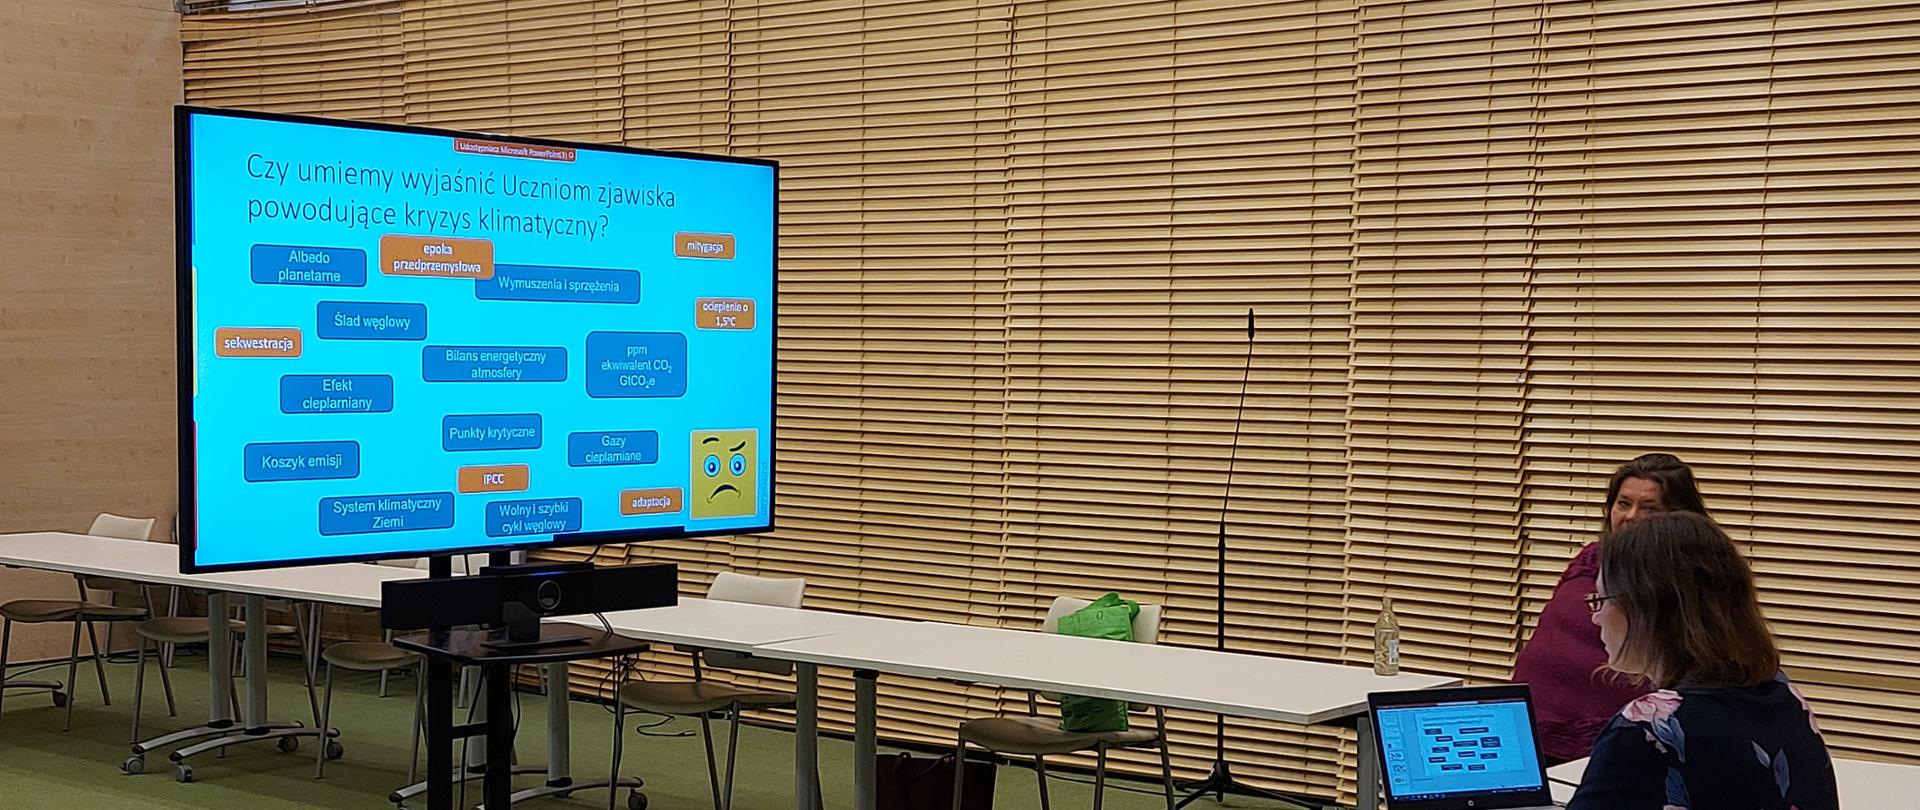 Ekran na stojaku przedstawiający wykres wykorzystywany podczas szkolenia dla nauczycieli "Jak uczyć o energii jądrowej"